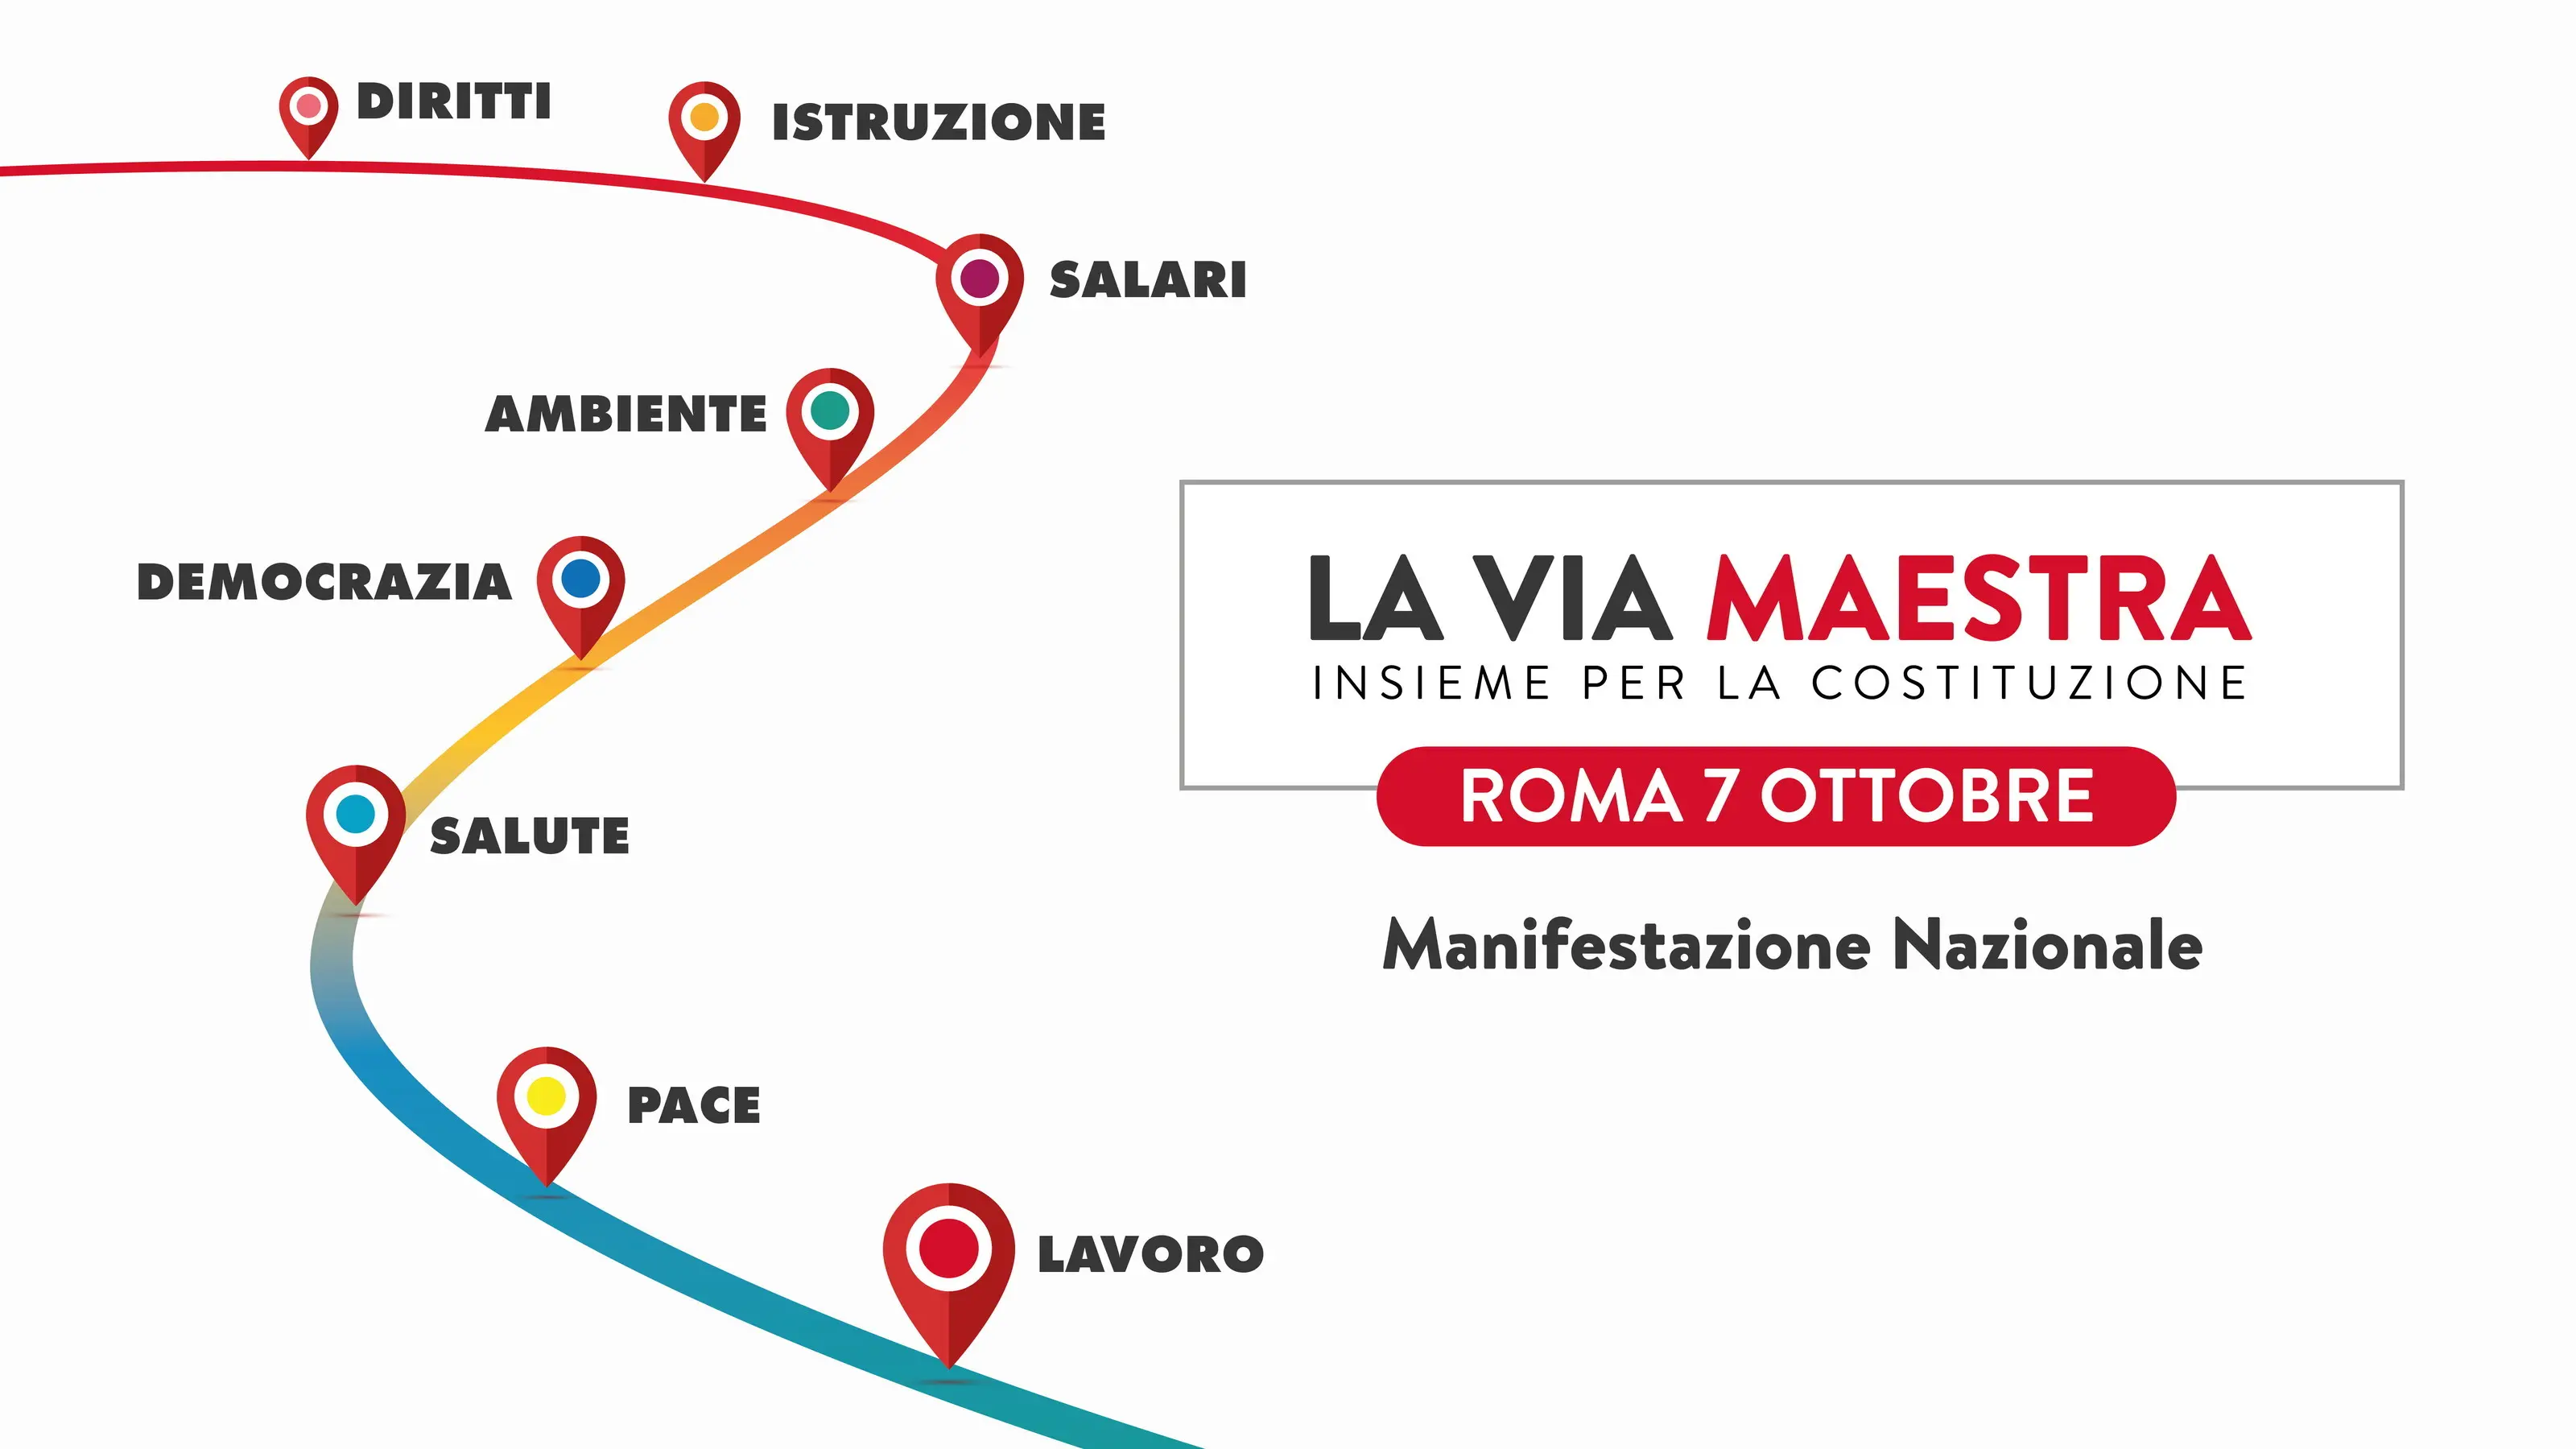 La Via Maestra: 7 ottobre tutti in piazza a Roma